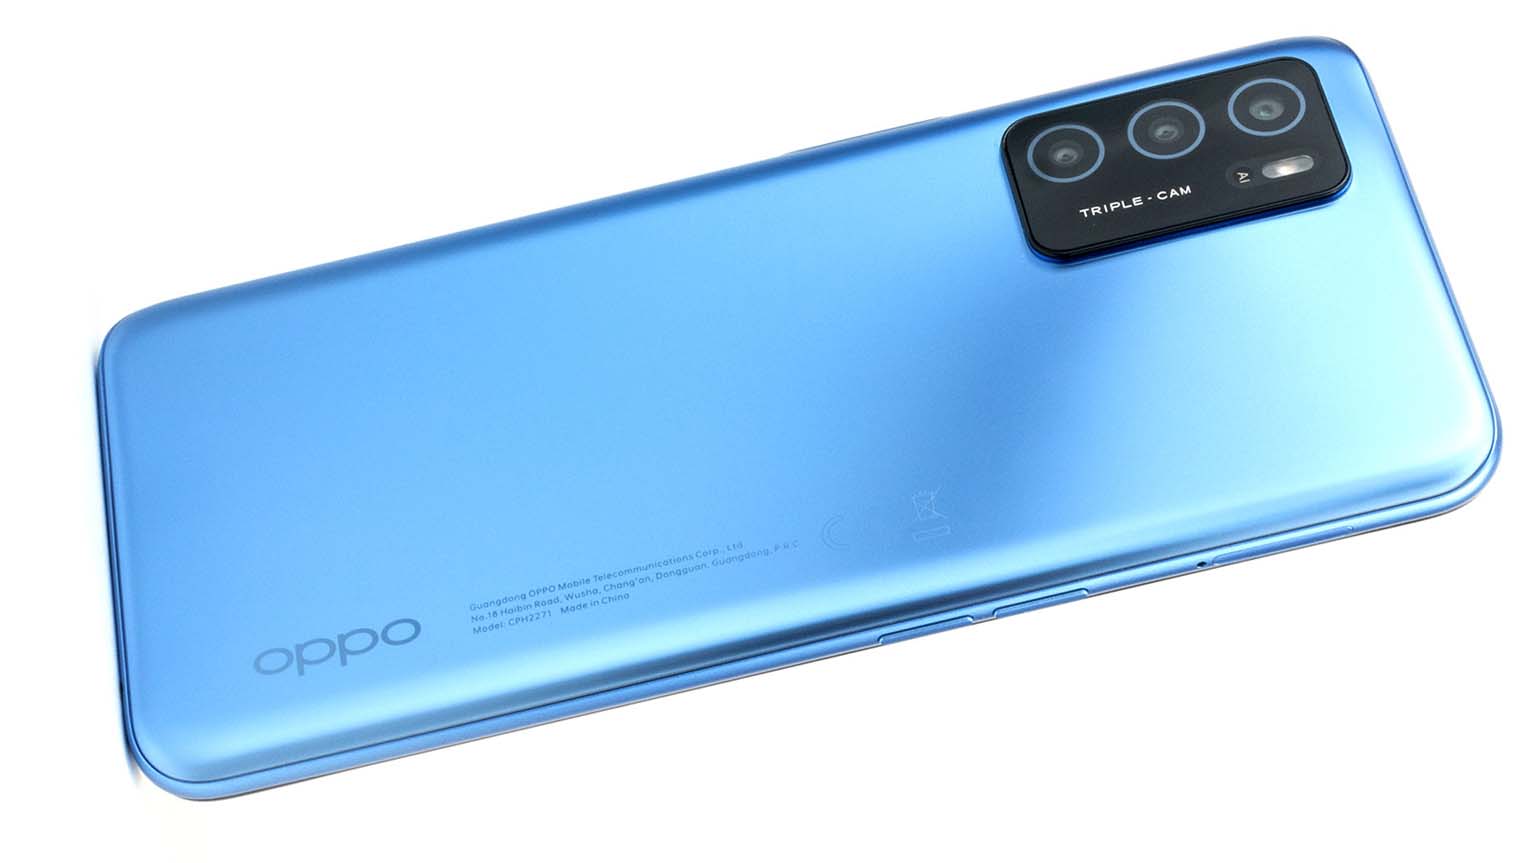 OPPO Smartphones